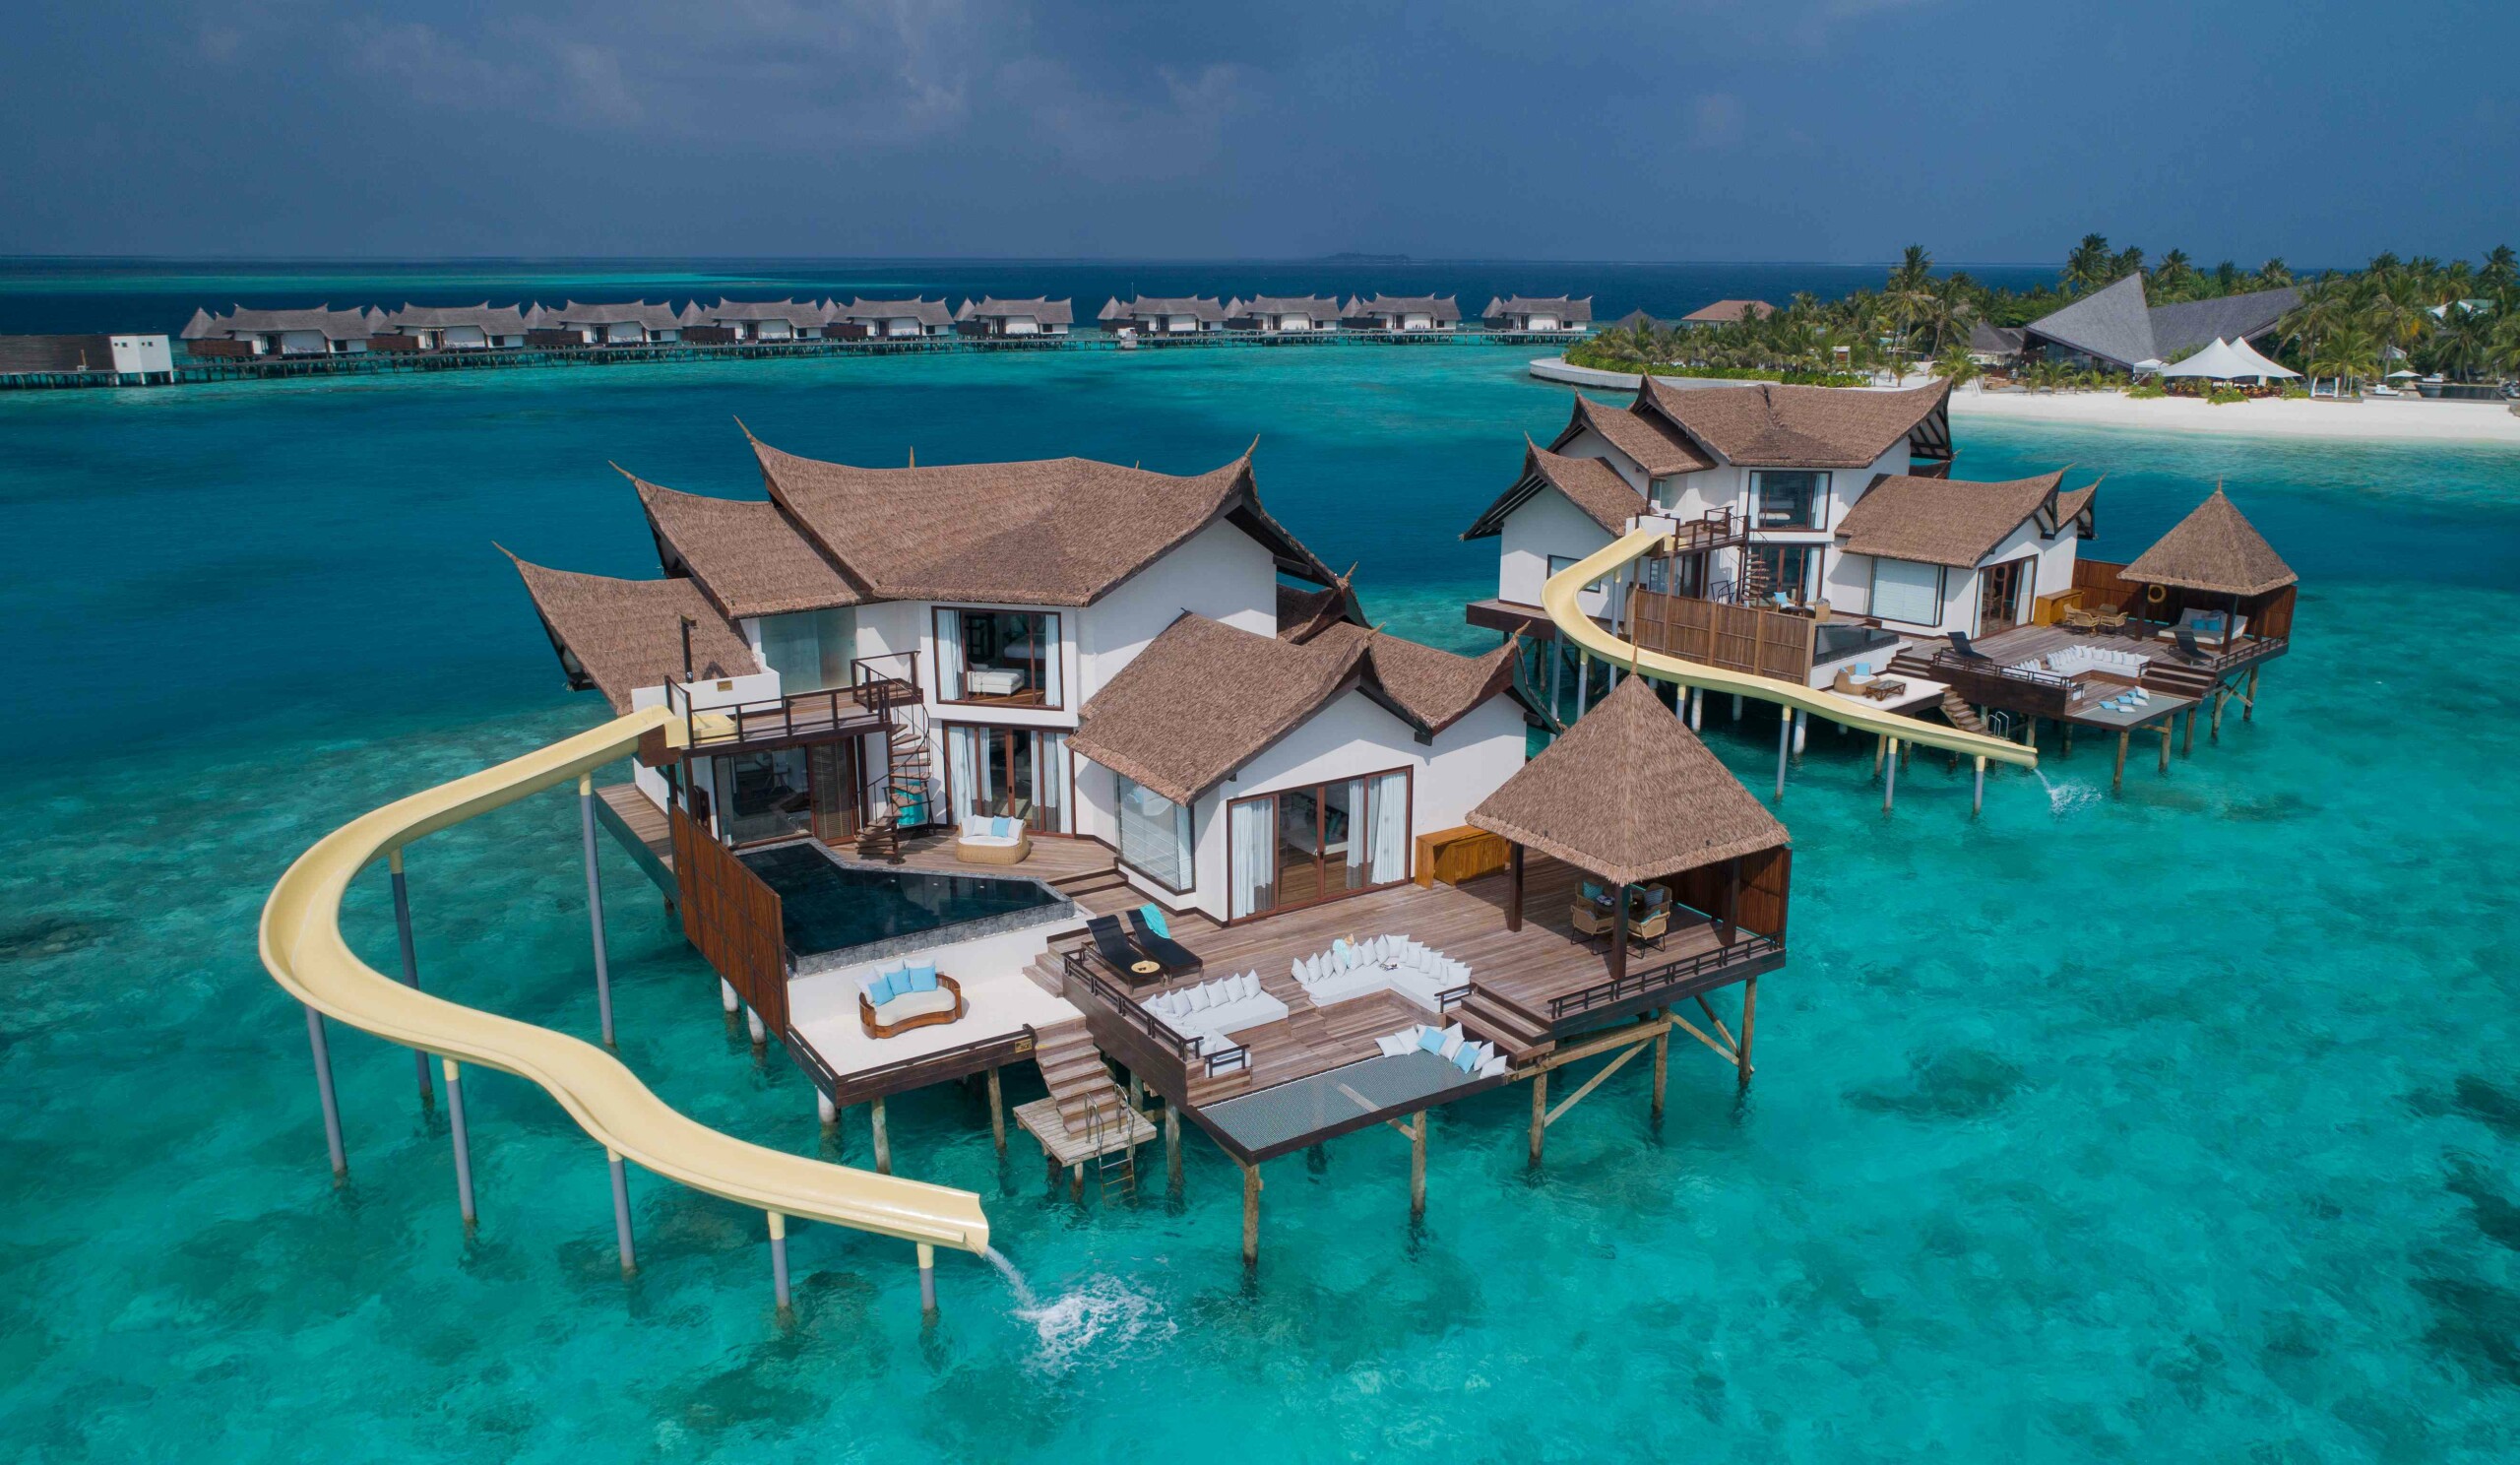 马尔代夫宁静岛W酒店 W Maldives - 选岛啦Blog